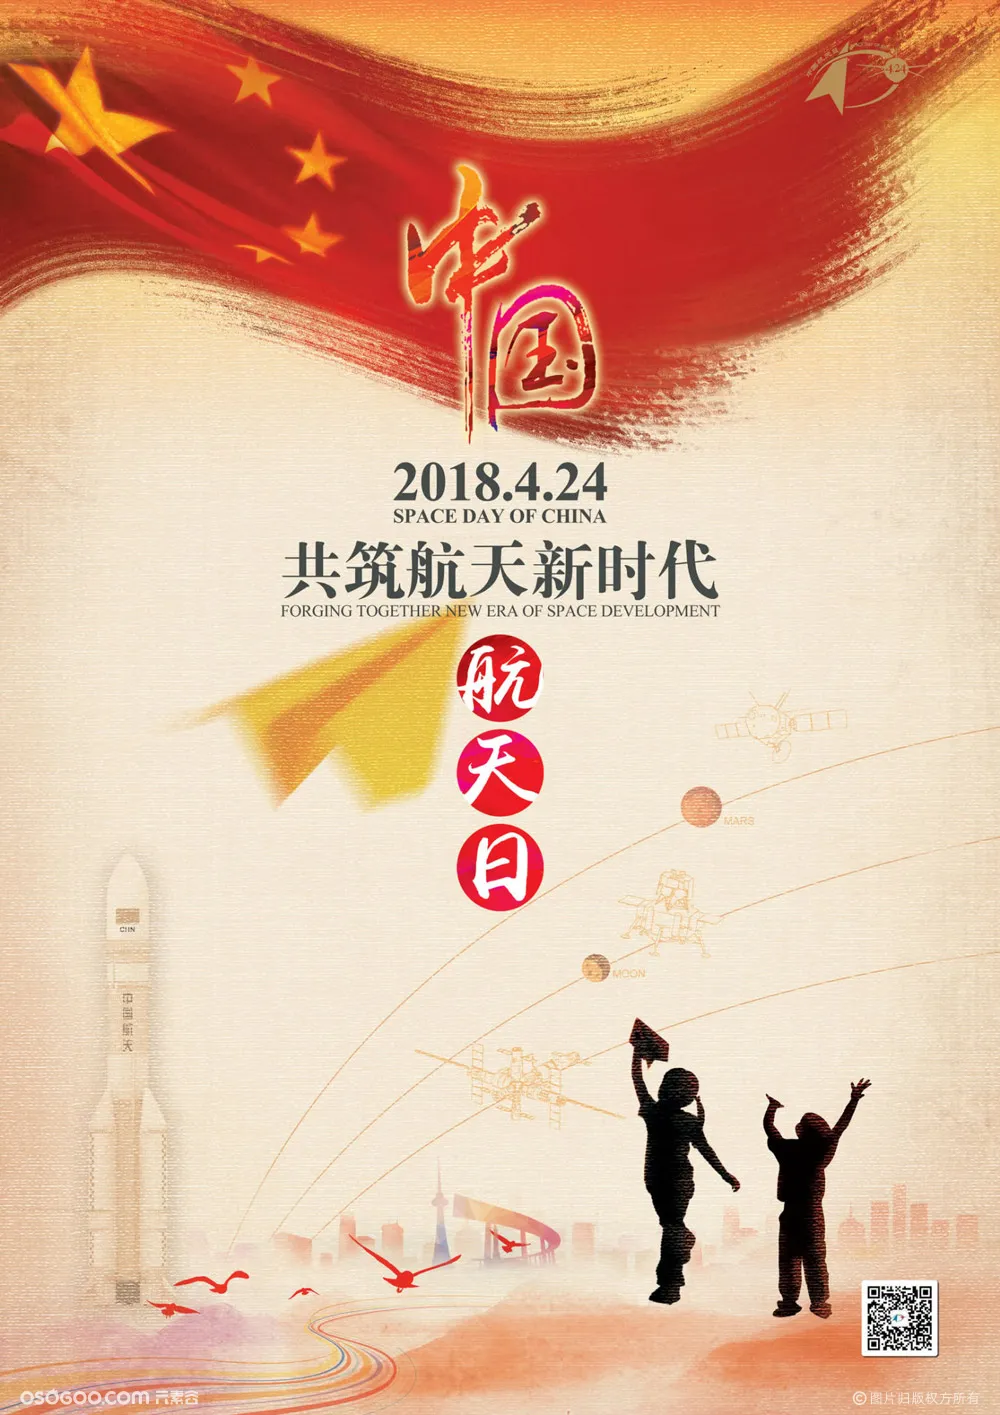 2018年中国航天日海报,体现家国情怀,大国担当.不过依旧素材感太浓.